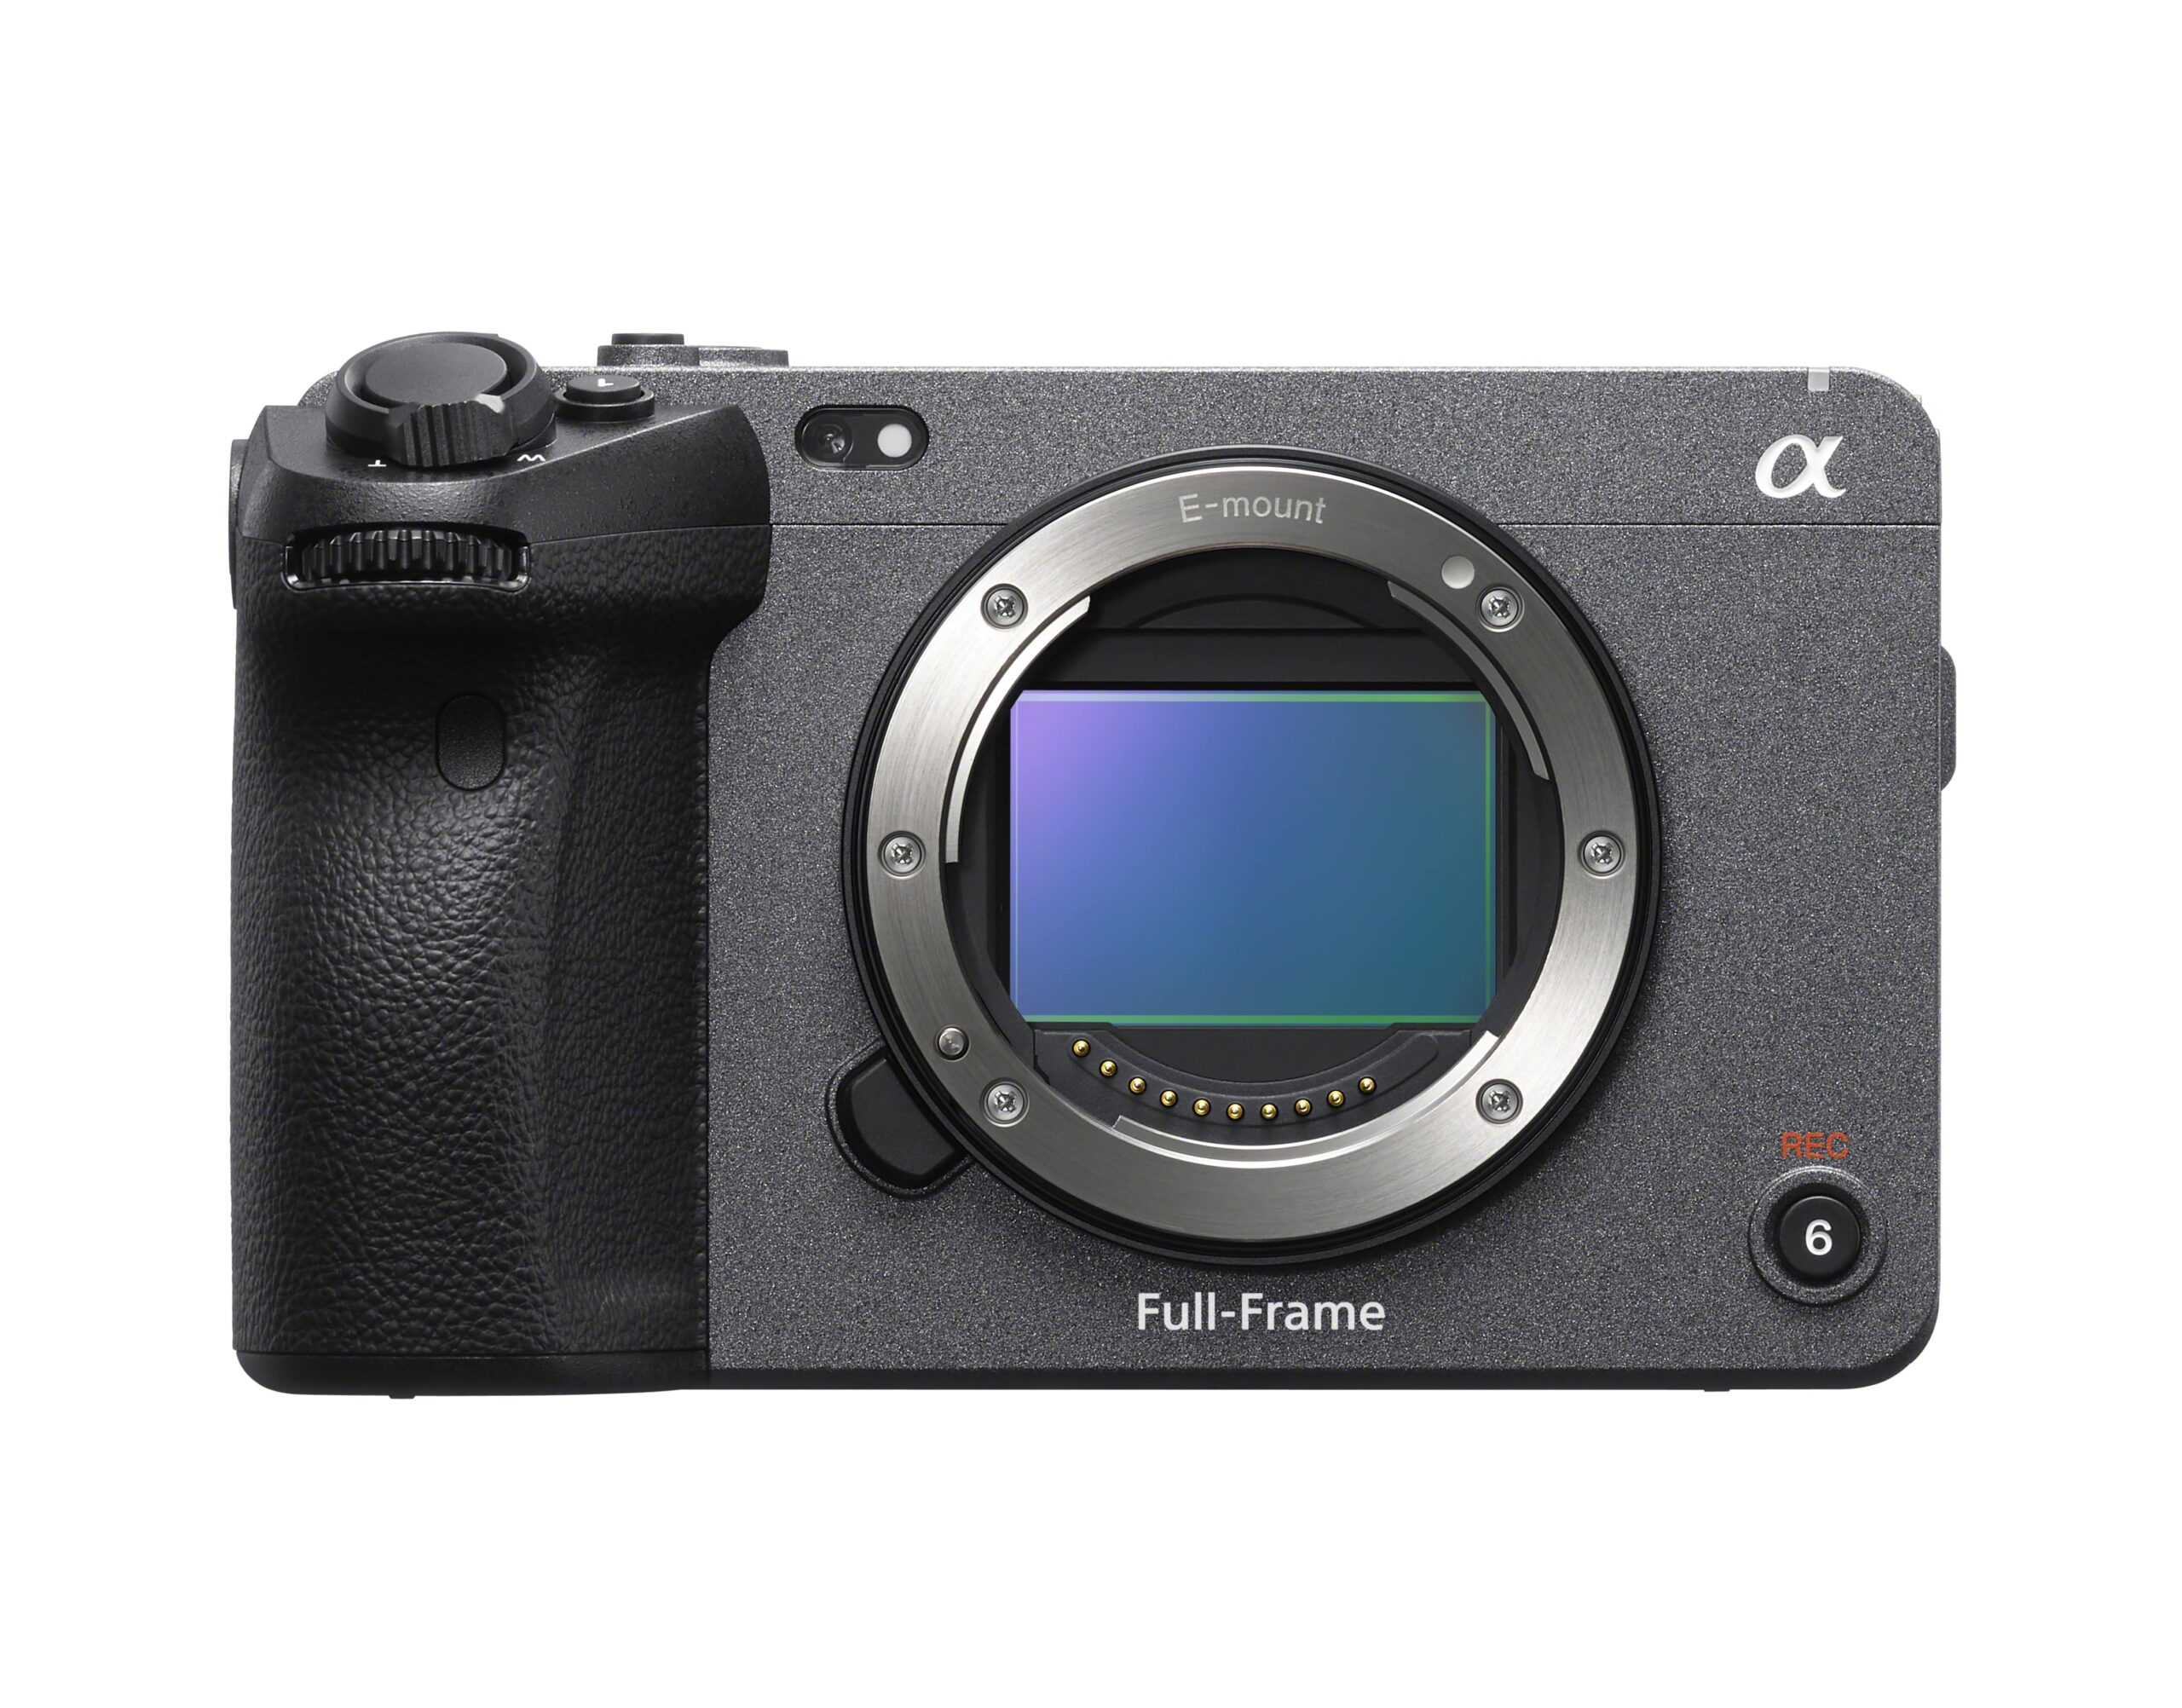 Nowa pełnoklatkowa kamera Sony FX3: filmowy wygląd obrazu i jeszcze większa funkcjonalność